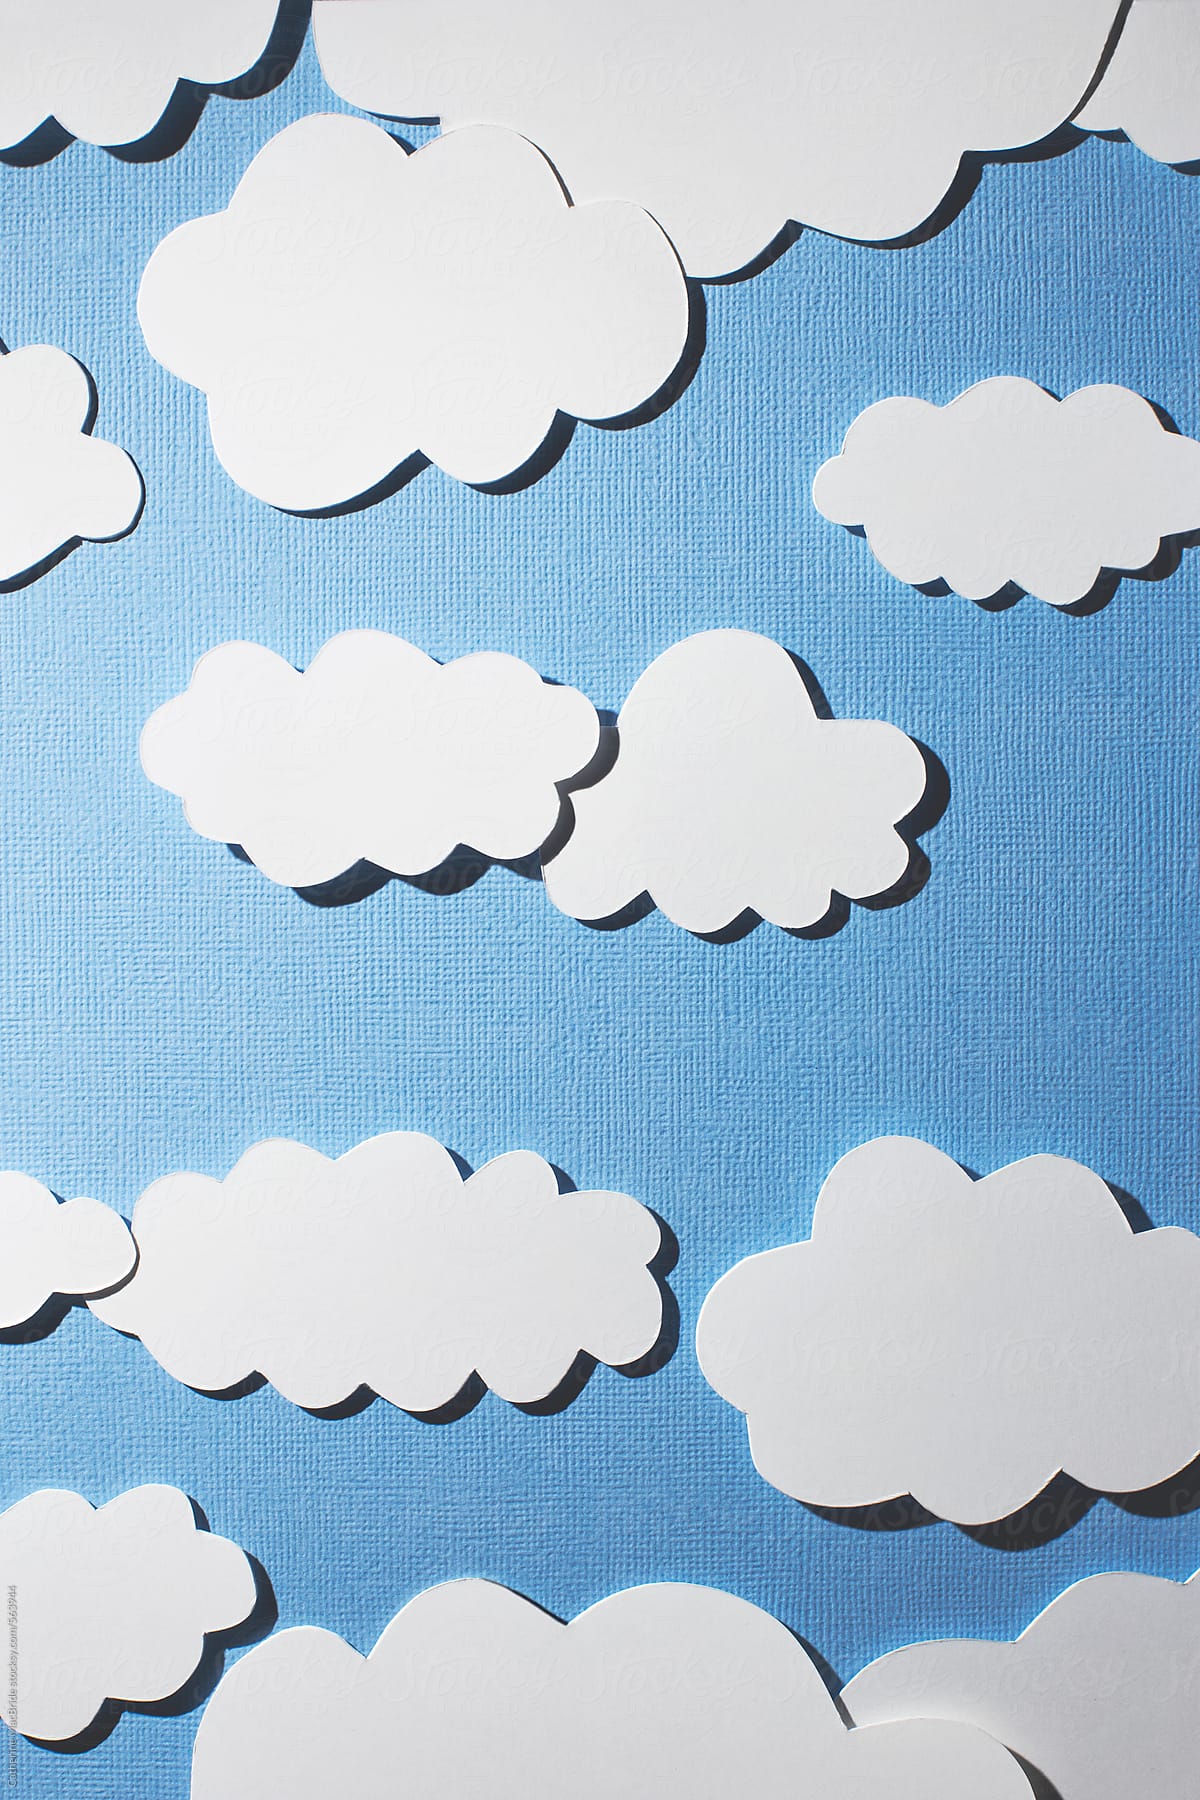 white paper clouds in blue paper sky...